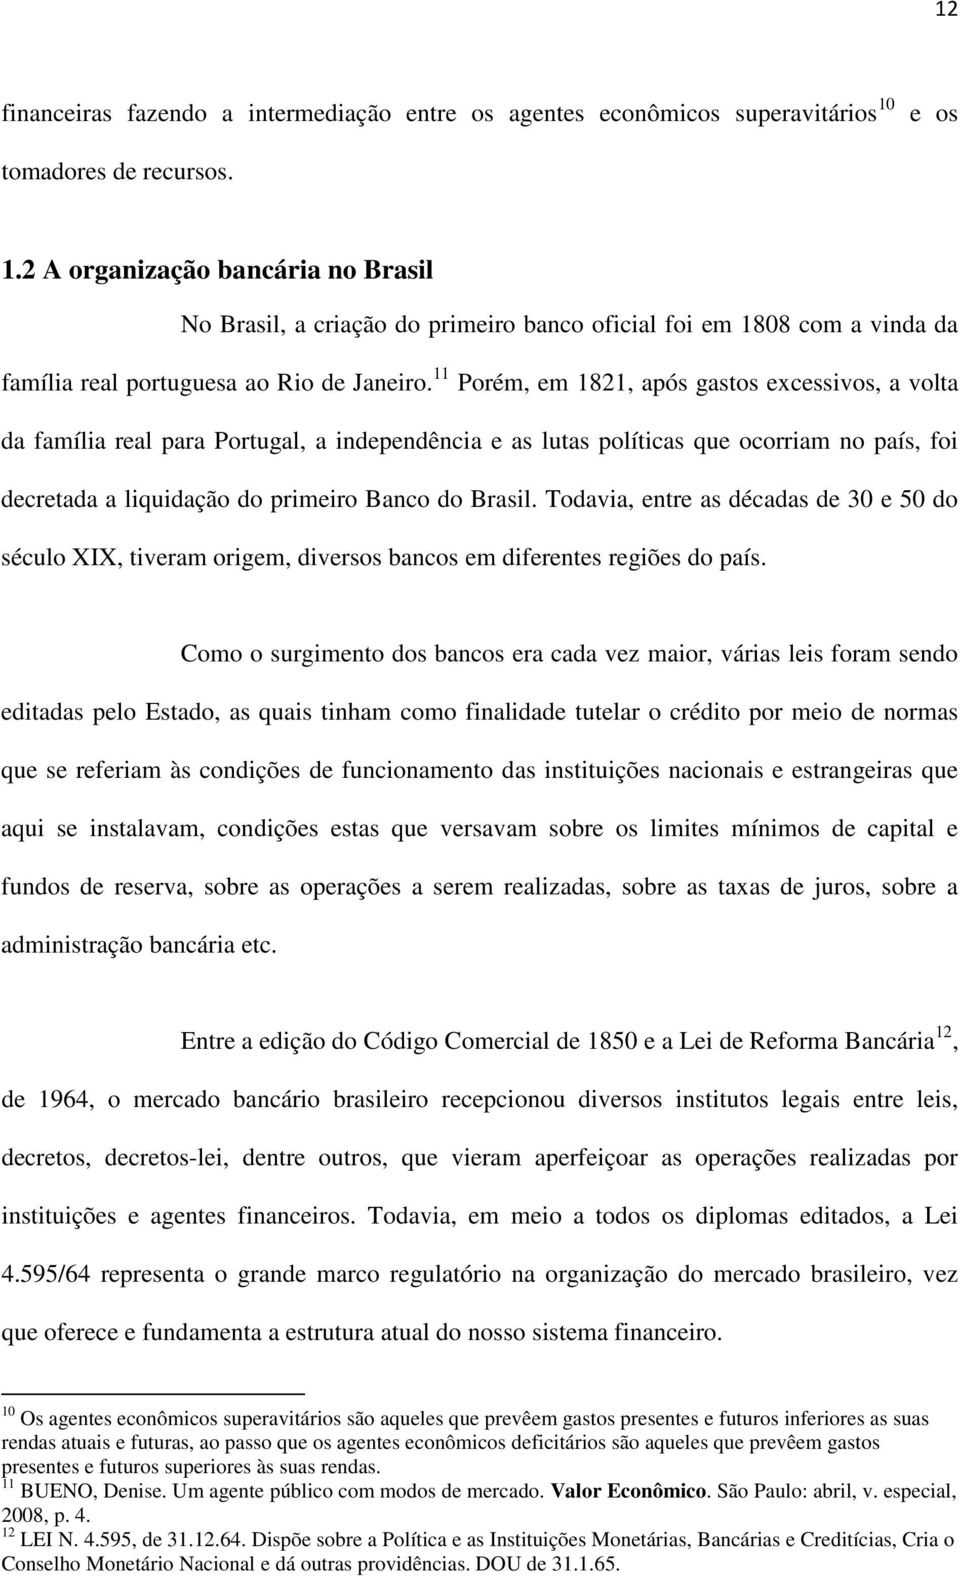 11 Porém, em 1821, após gastos excessivos, a volta da família real para Portugal, a independência e as lutas políticas que ocorriam no país, foi decretada a liquidação do primeiro Banco do Brasil.